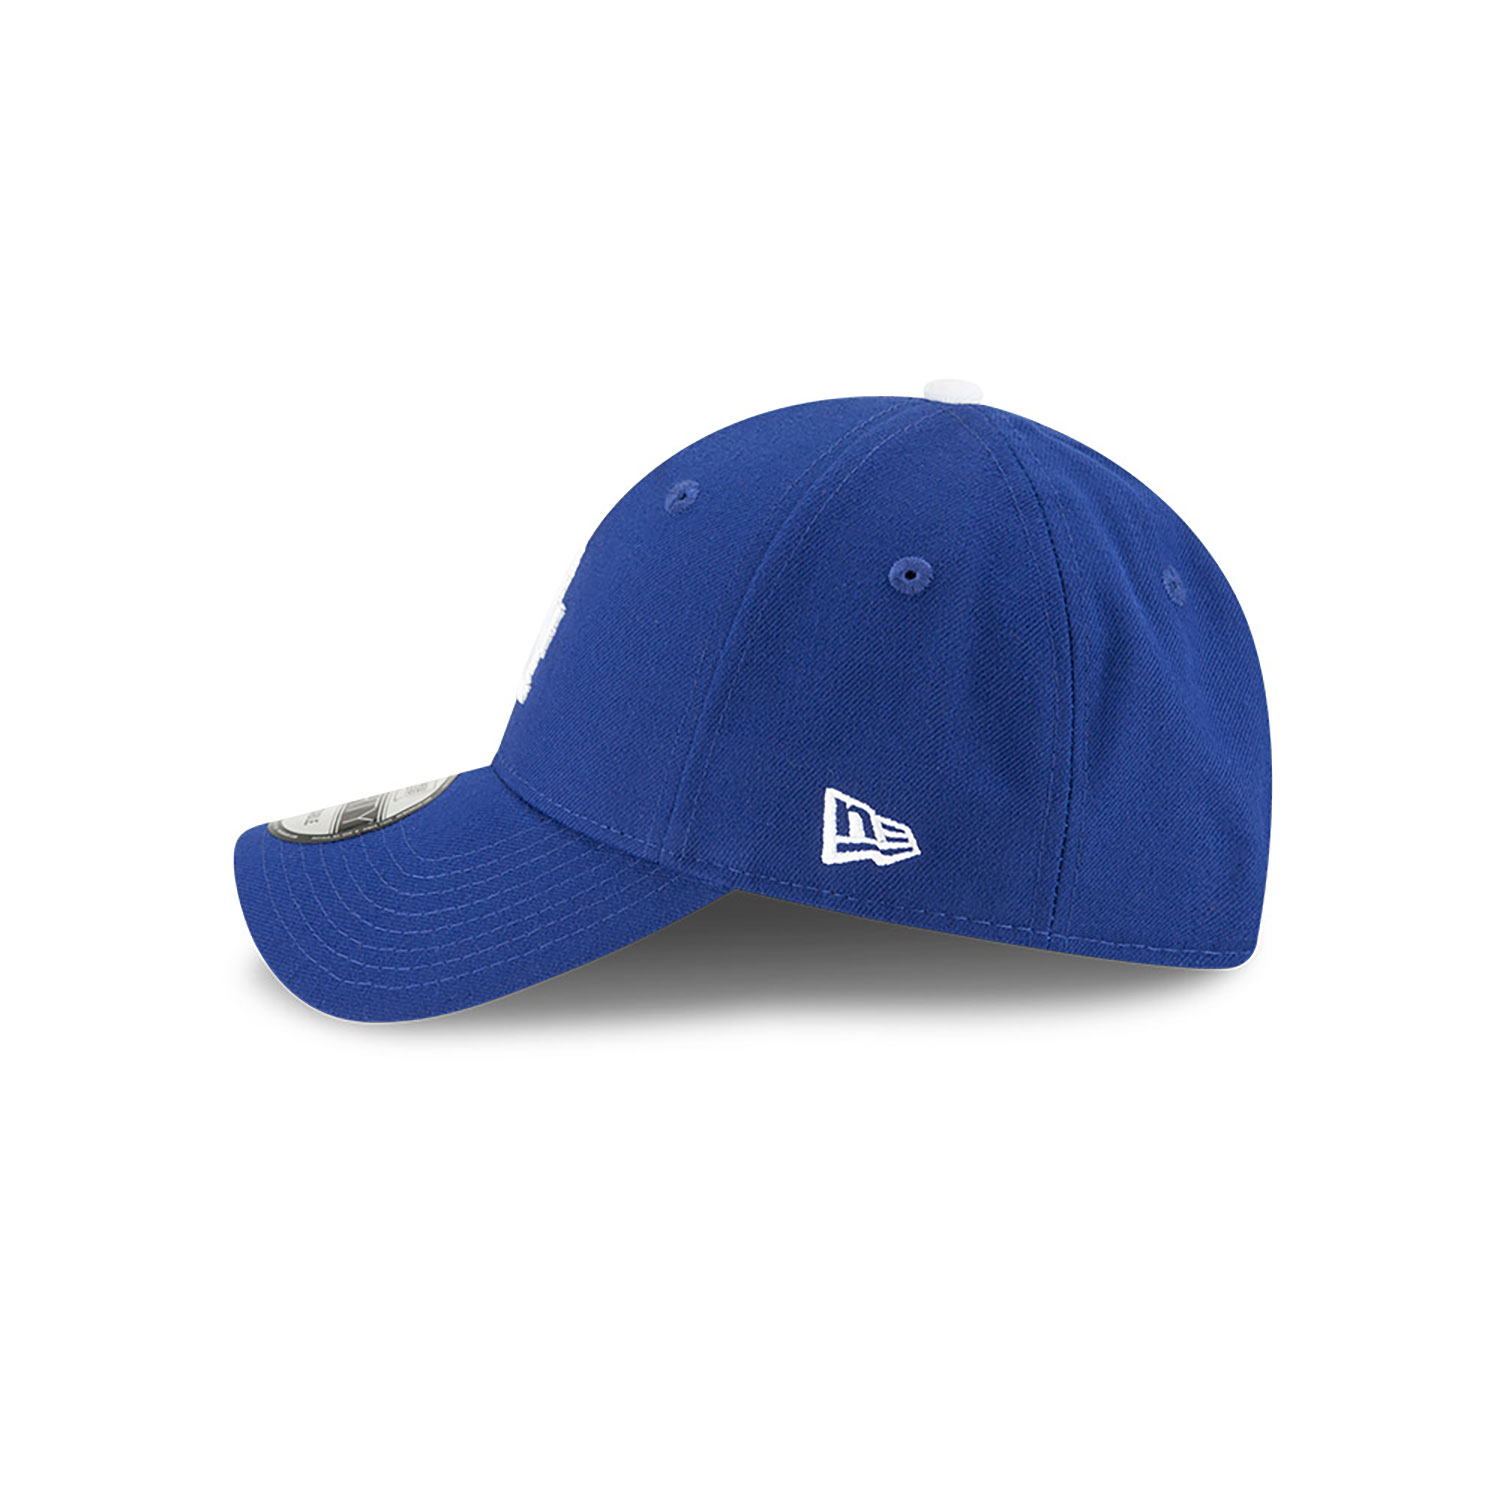 LA Dodgers The League Blue 9FORTY Cap